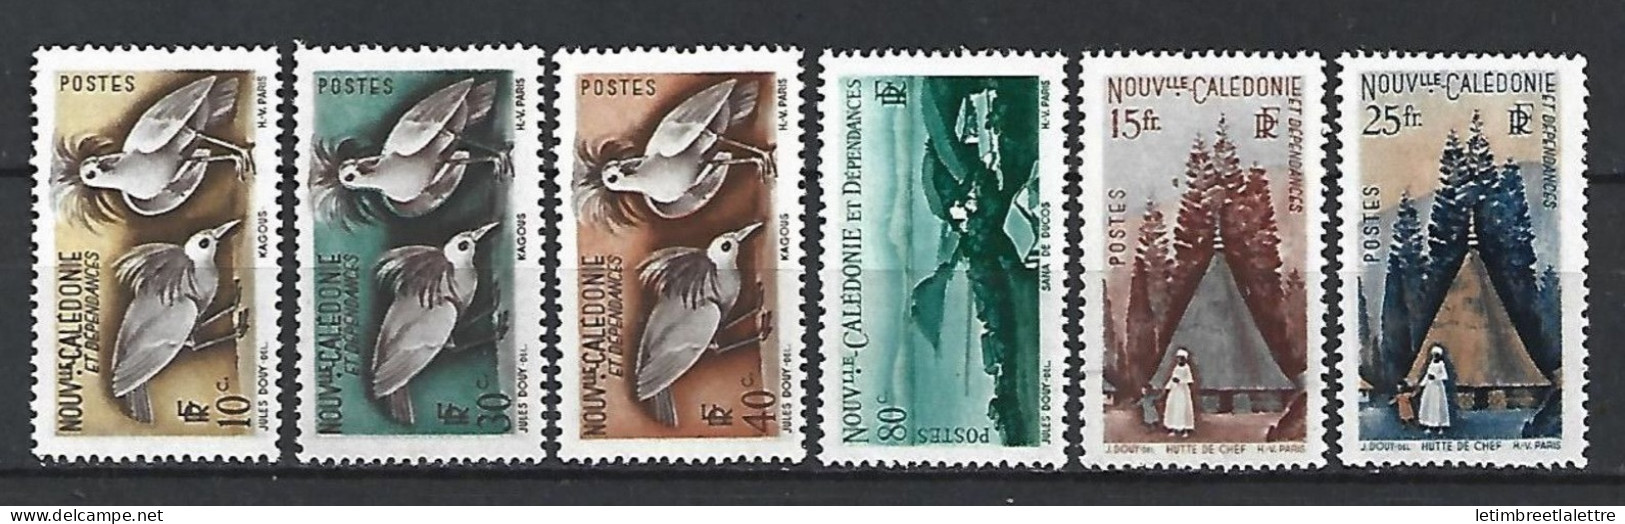 Nouvelles Calédonie - YT N° 259 à 264 ** - Neuf Sans Charnière - 1948 - Neufs